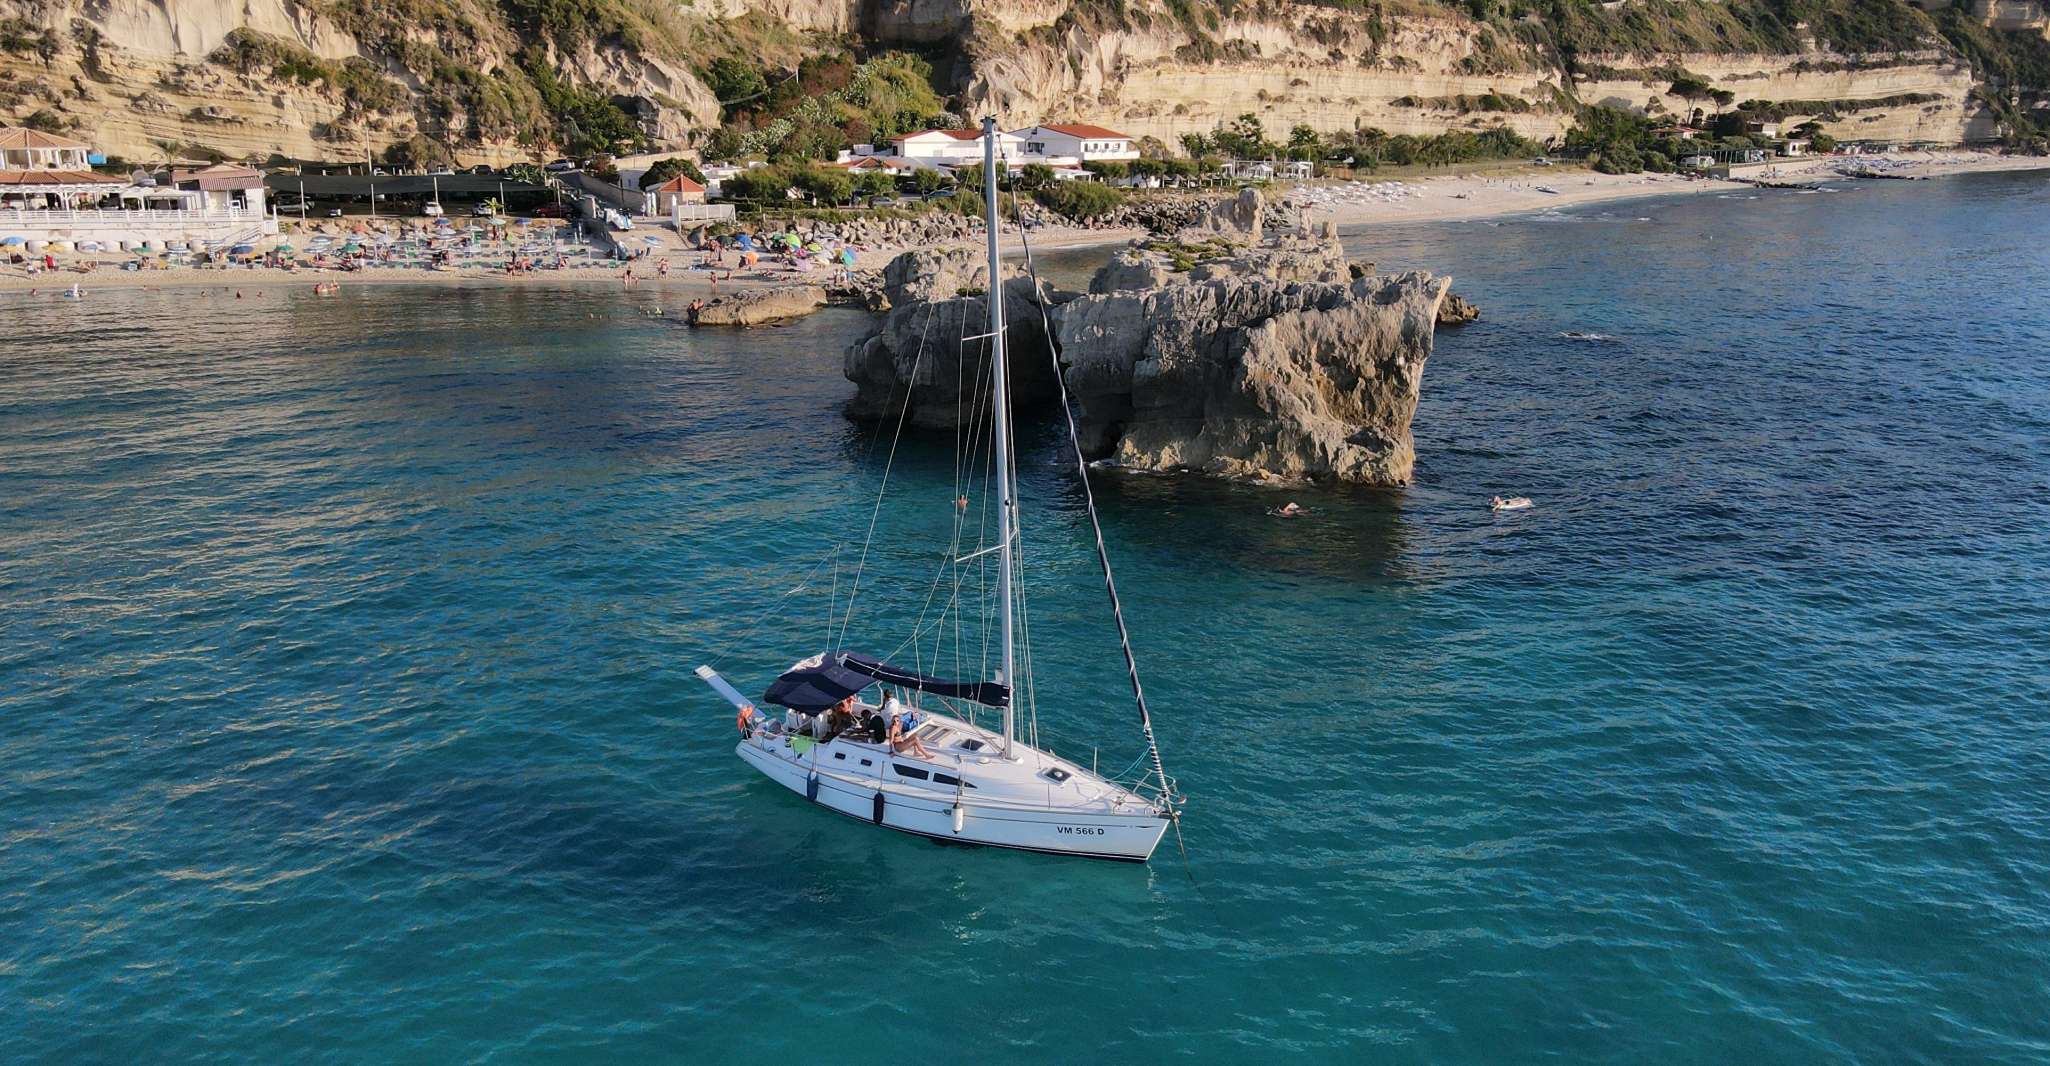 Da Tropea, Tour in barca a vela lungo la costa degli Dei. - Housity